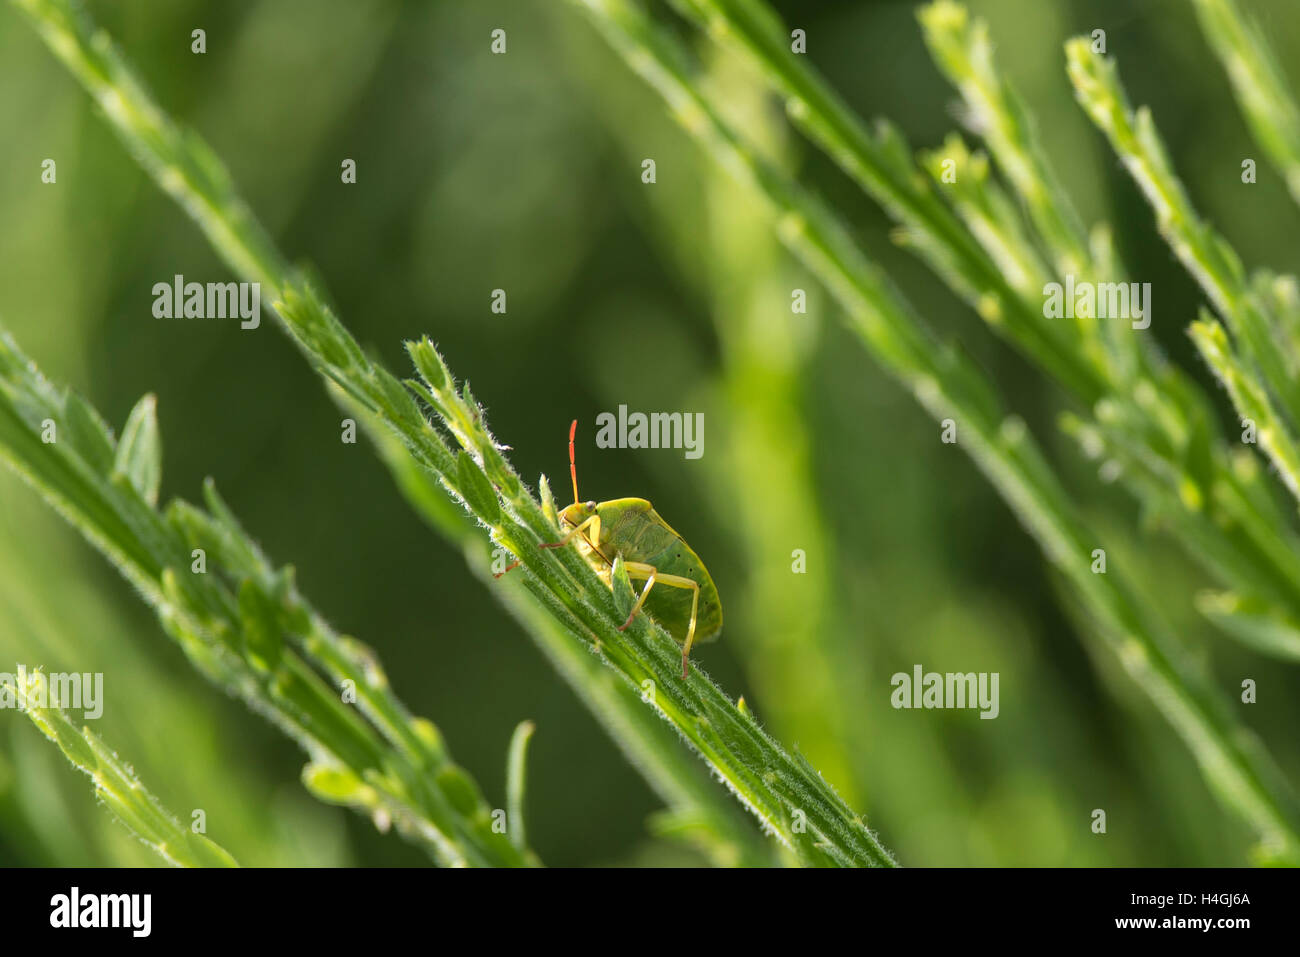 Un green shield bug assis sur une tige de la plante verte Banque D'Images